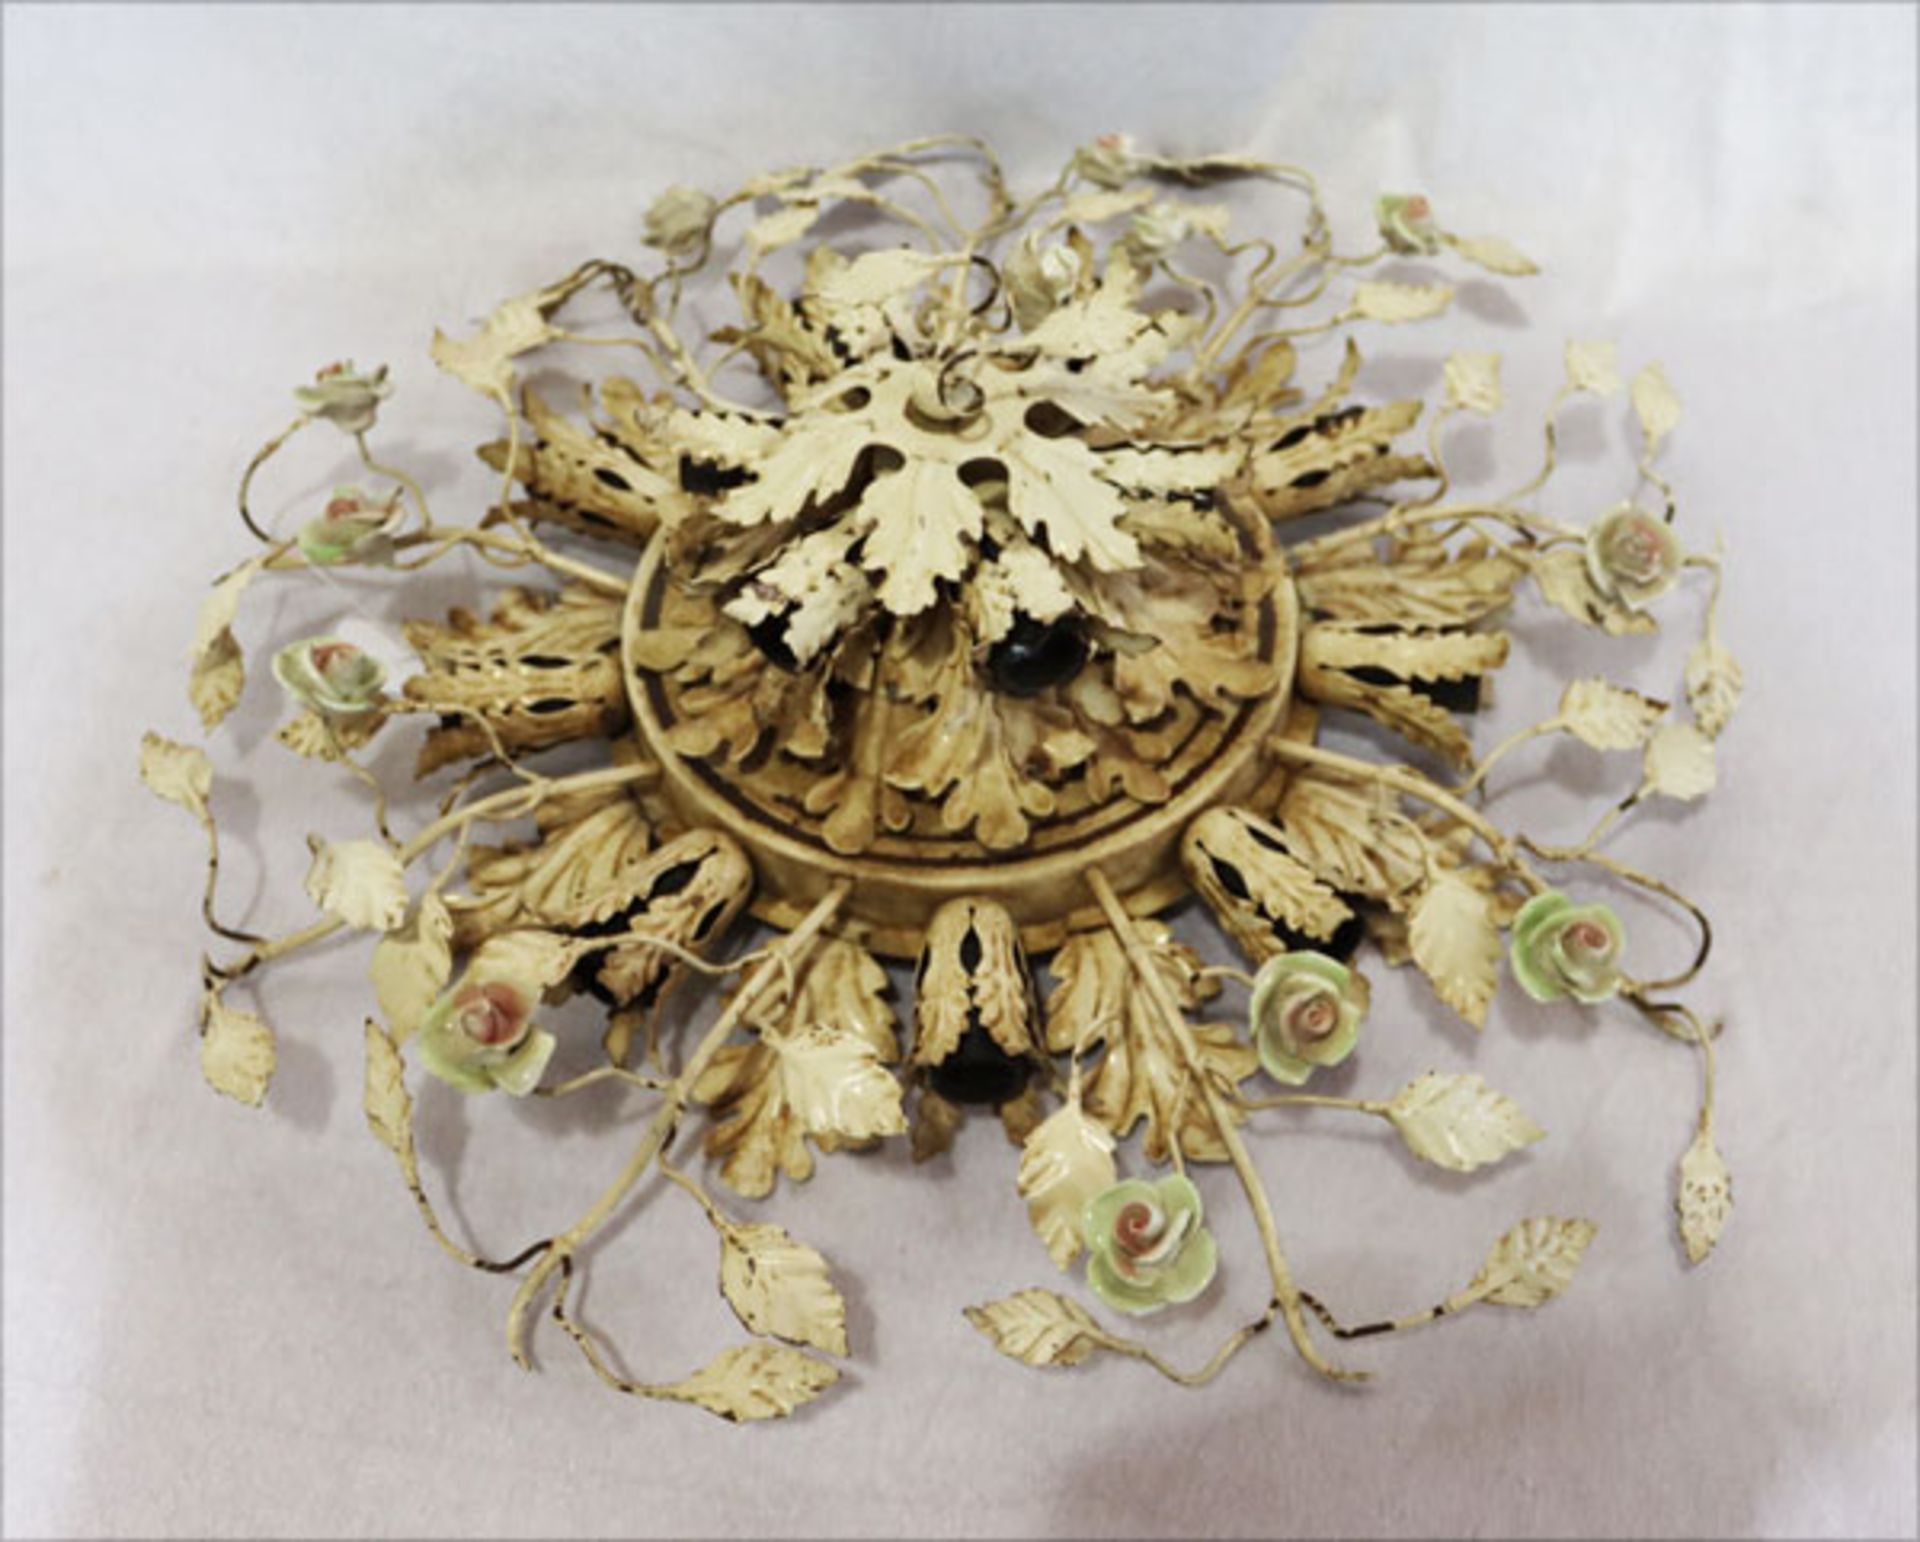 Metall Deckenlampe in floralem Dekor, beige bemalt, D 60 cm, Funktion nicht geprüft,